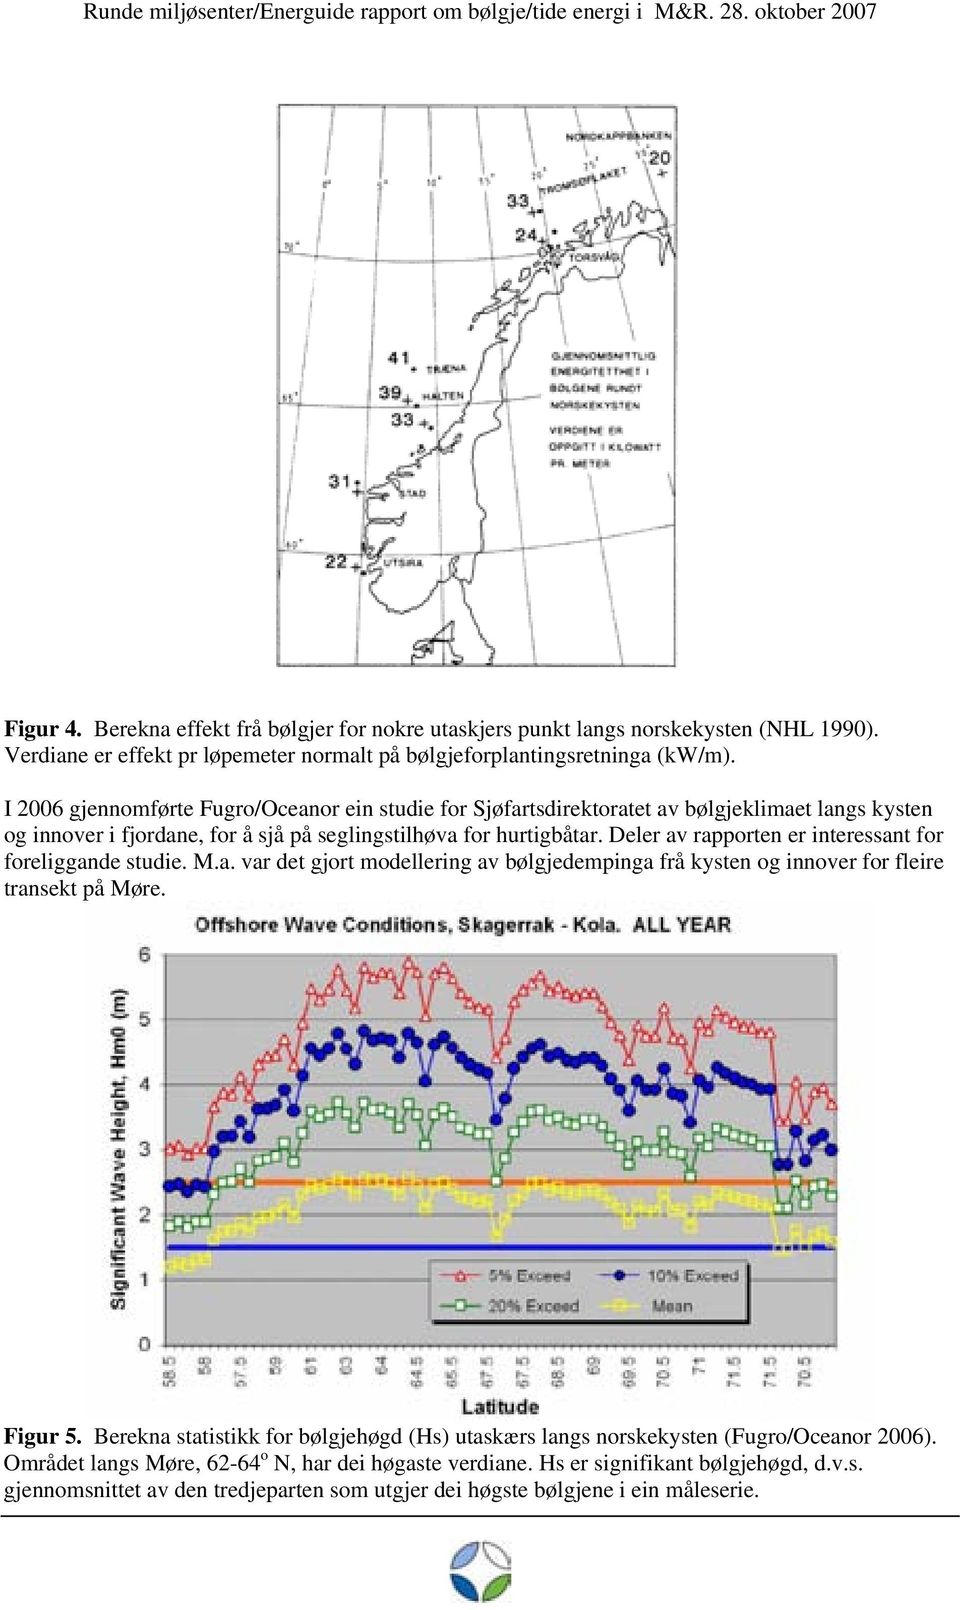 Deler av rapporten er interessant for foreliggande studie. M.a. var det gjort modellering av bølgjedempinga frå kysten og innover for fleire transekt på Møre. Figur 5.